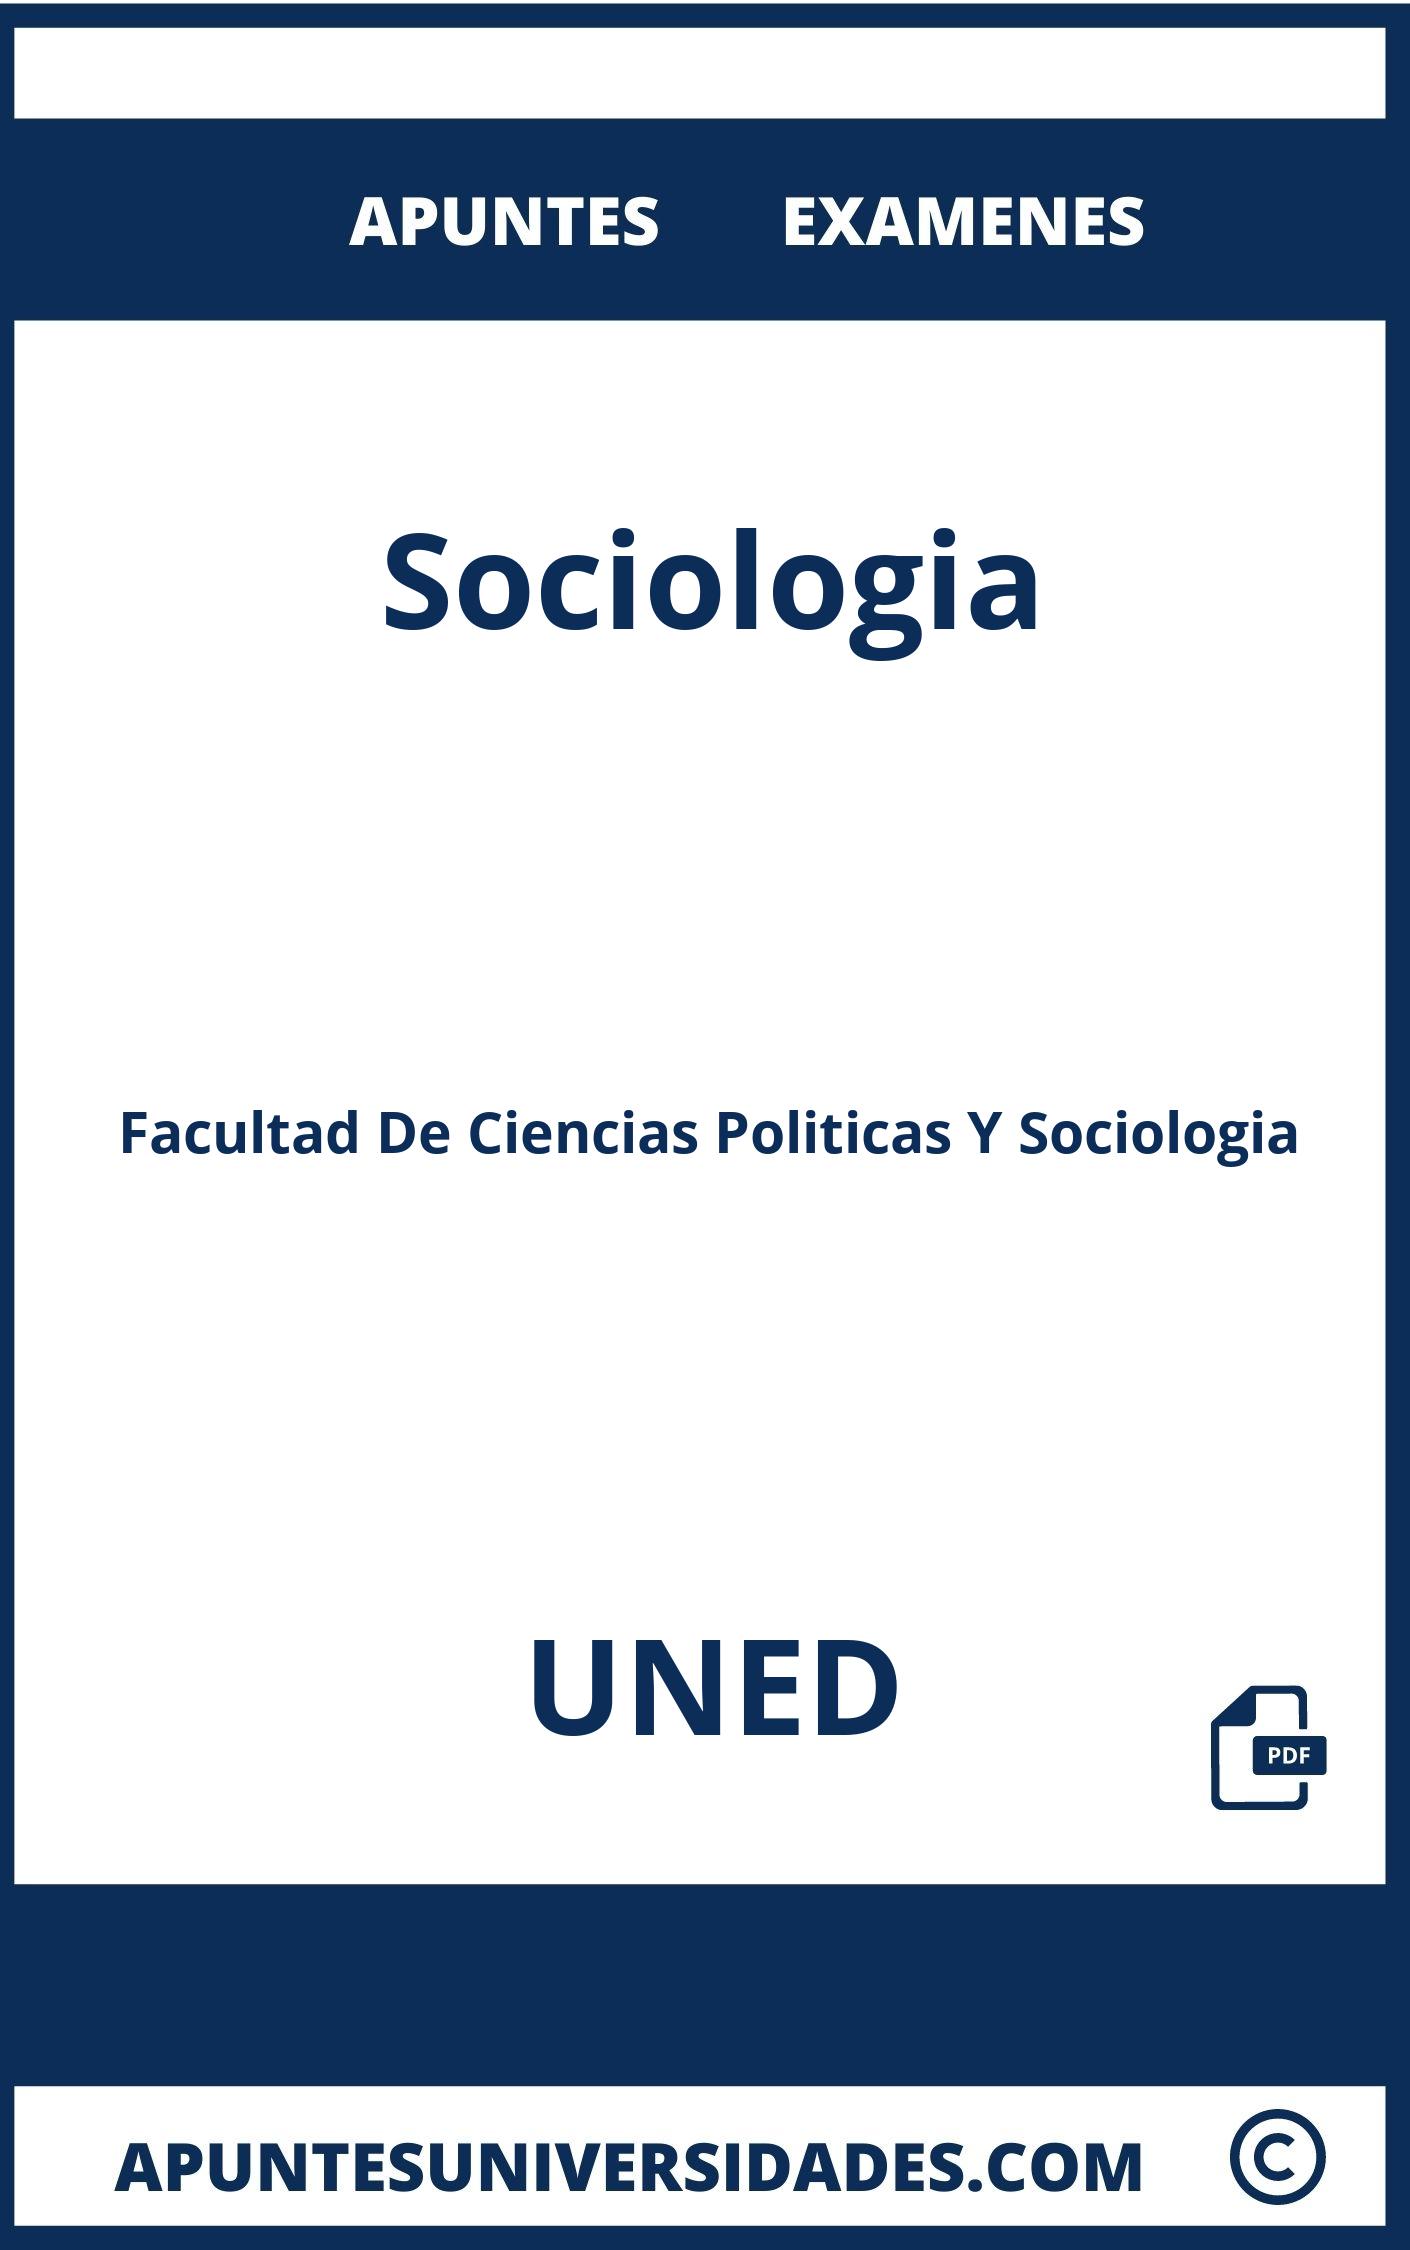 Apuntes Examenes Sociologia UNED